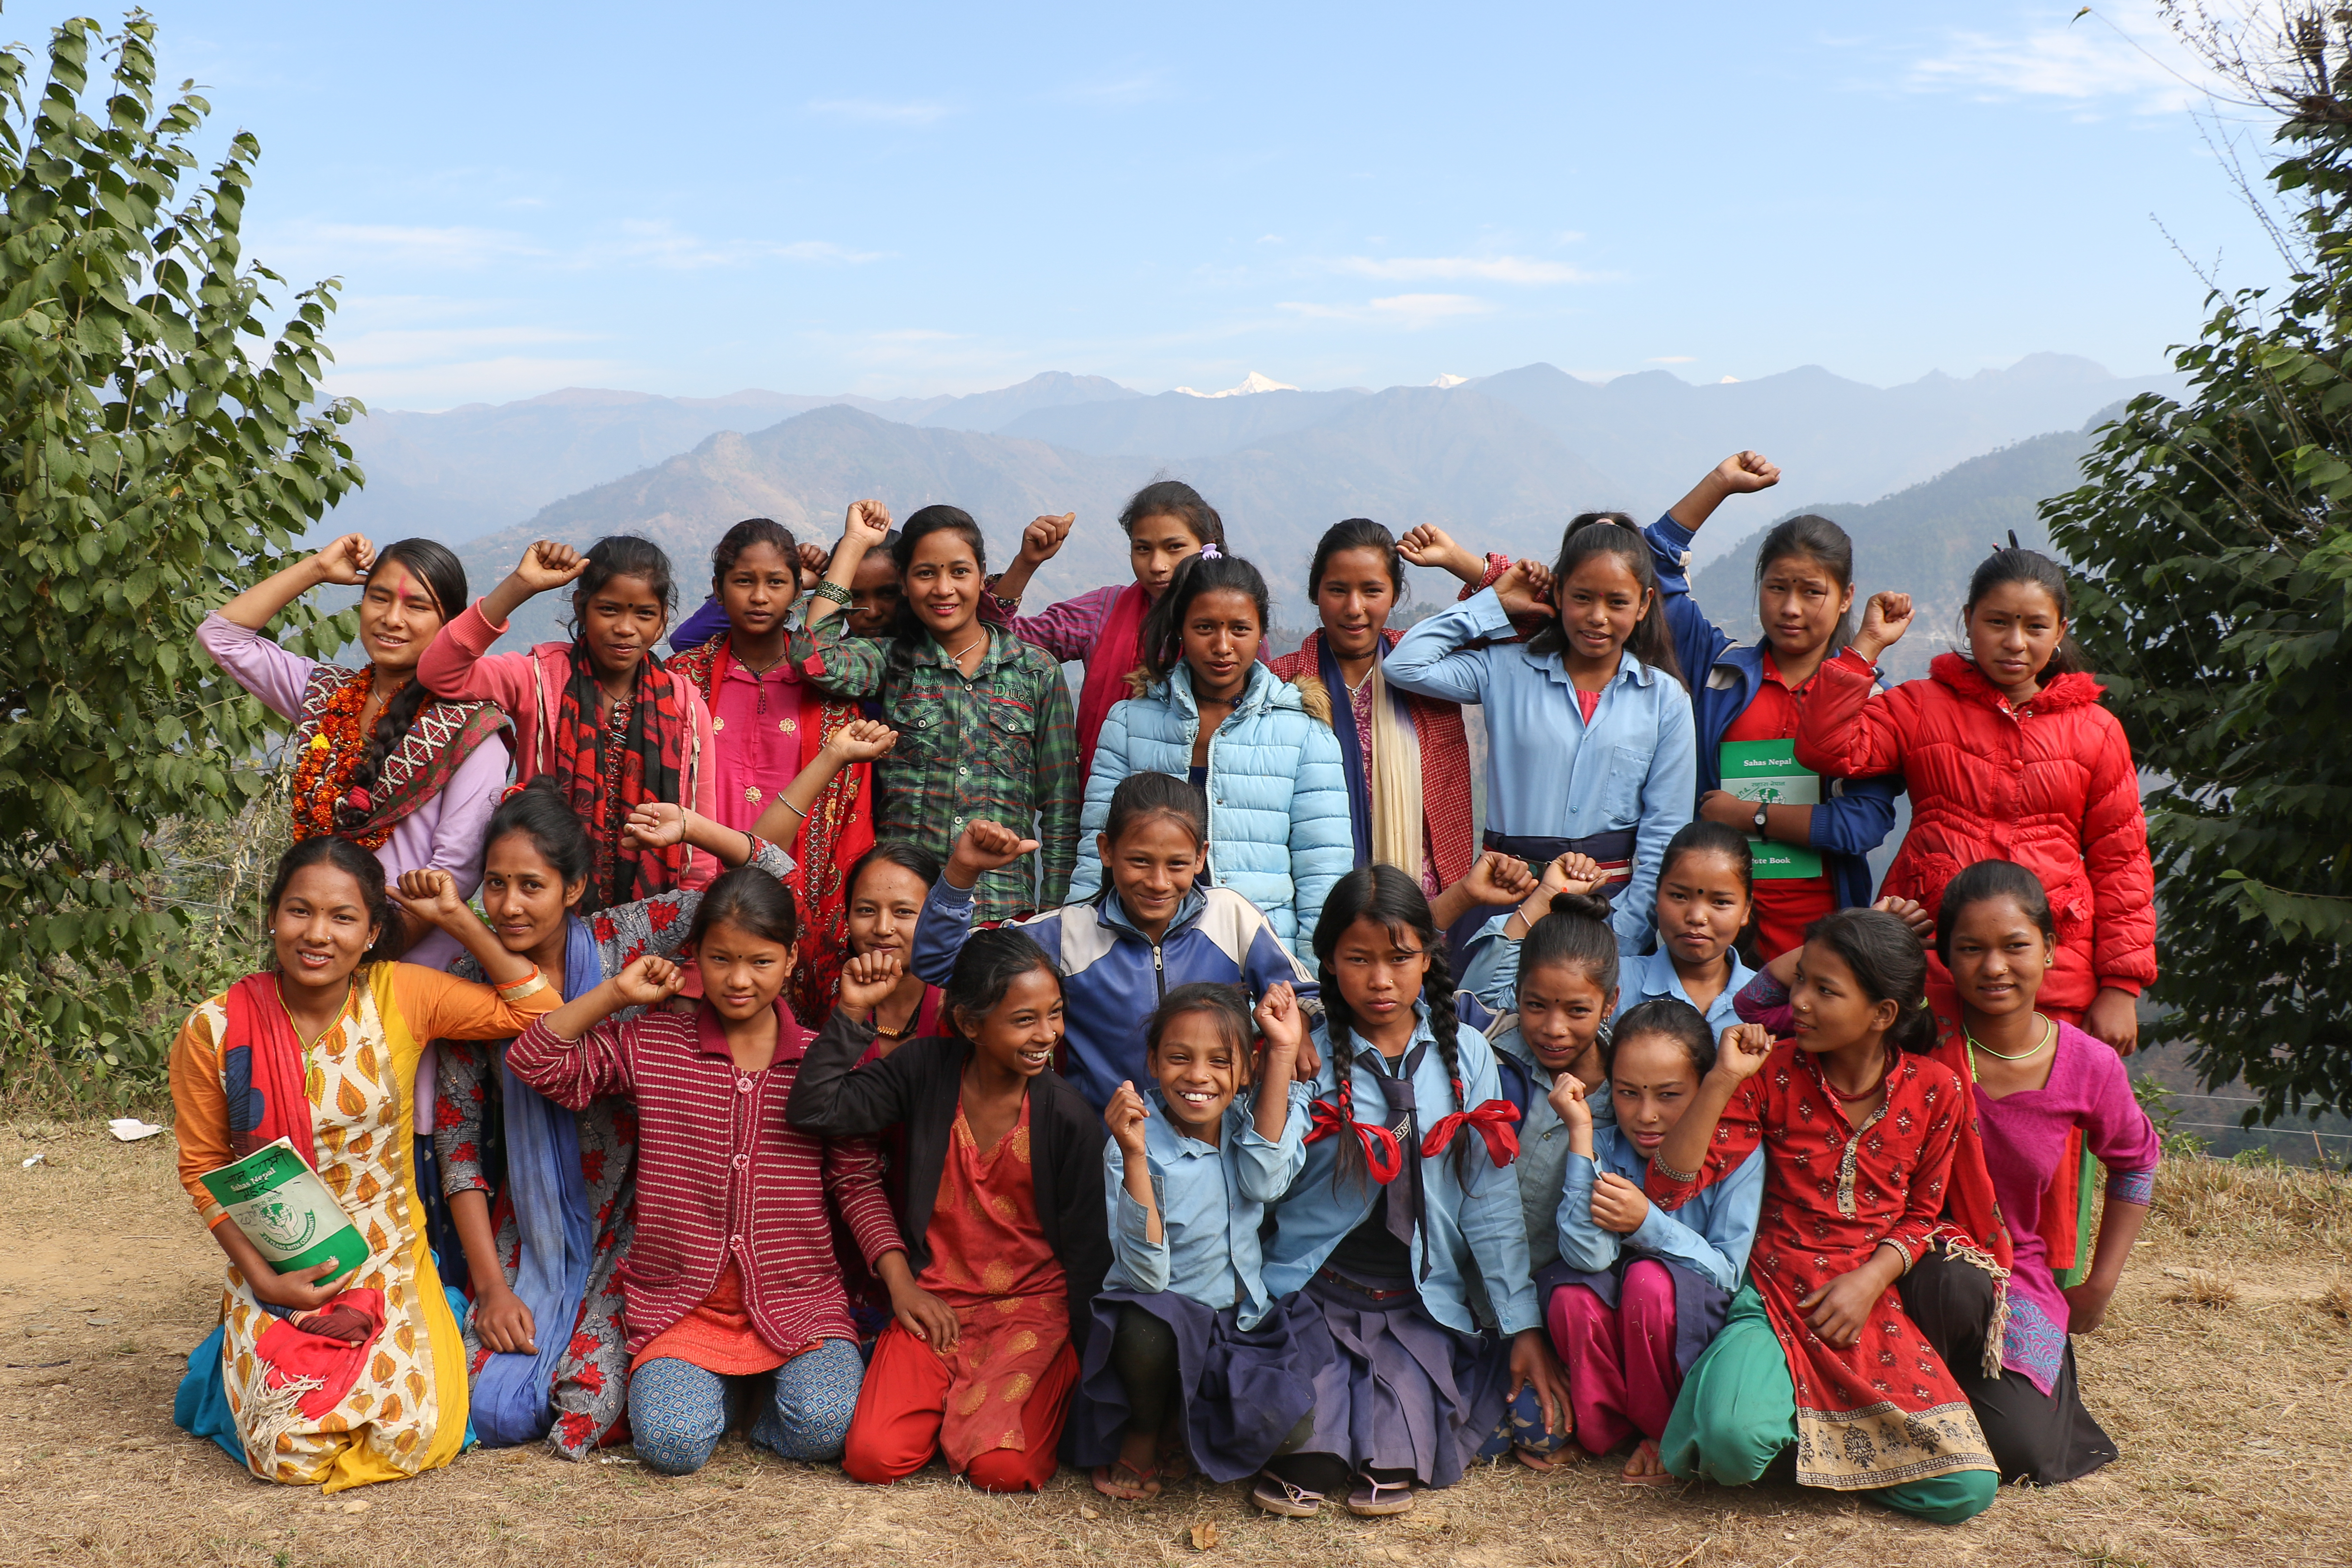 Samvad er ein inspirasjon og betyr mykje for den unge jenta og jentene i landsbyen. Urmila på kne i fremste rekke til venstre i bildet.